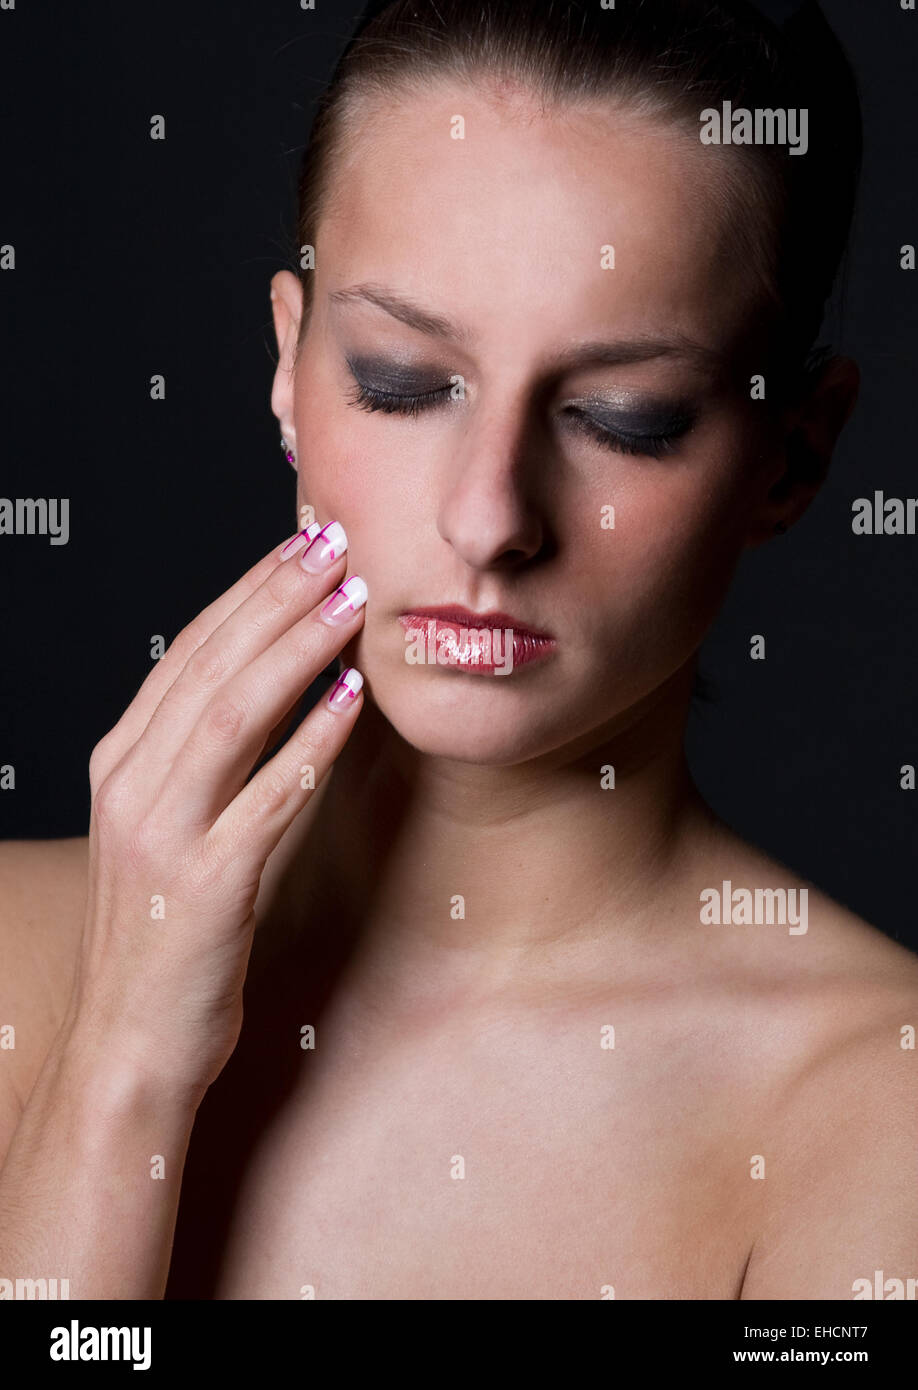 Beauty Stock Photo